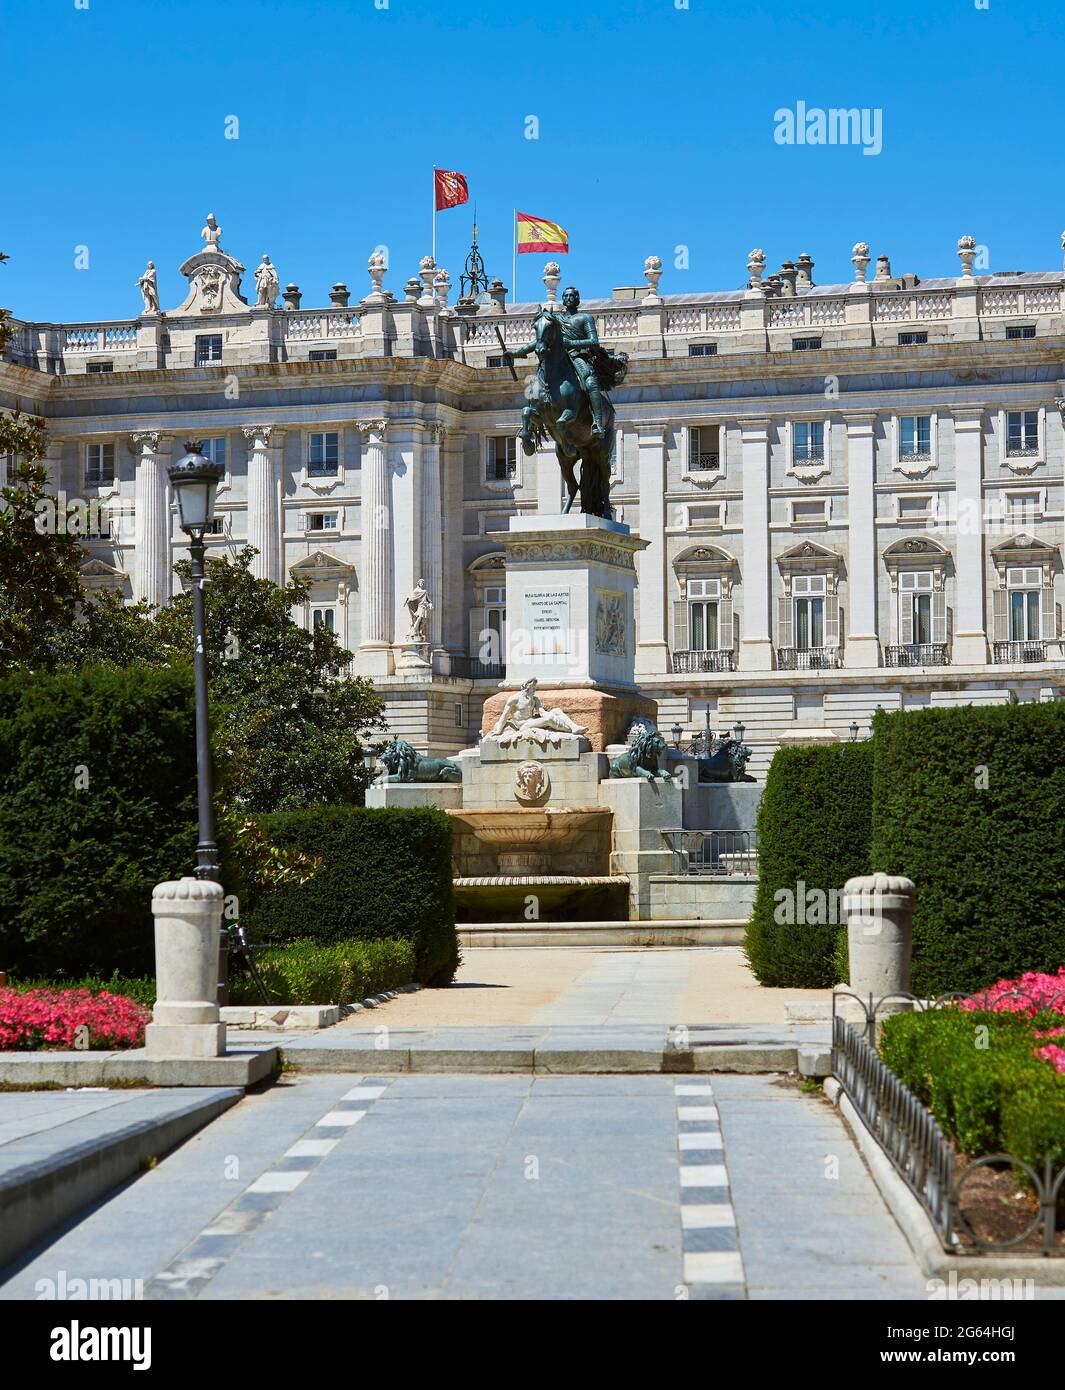 Plaza de Oriente Square. Madrid, Spain. Stock Photo